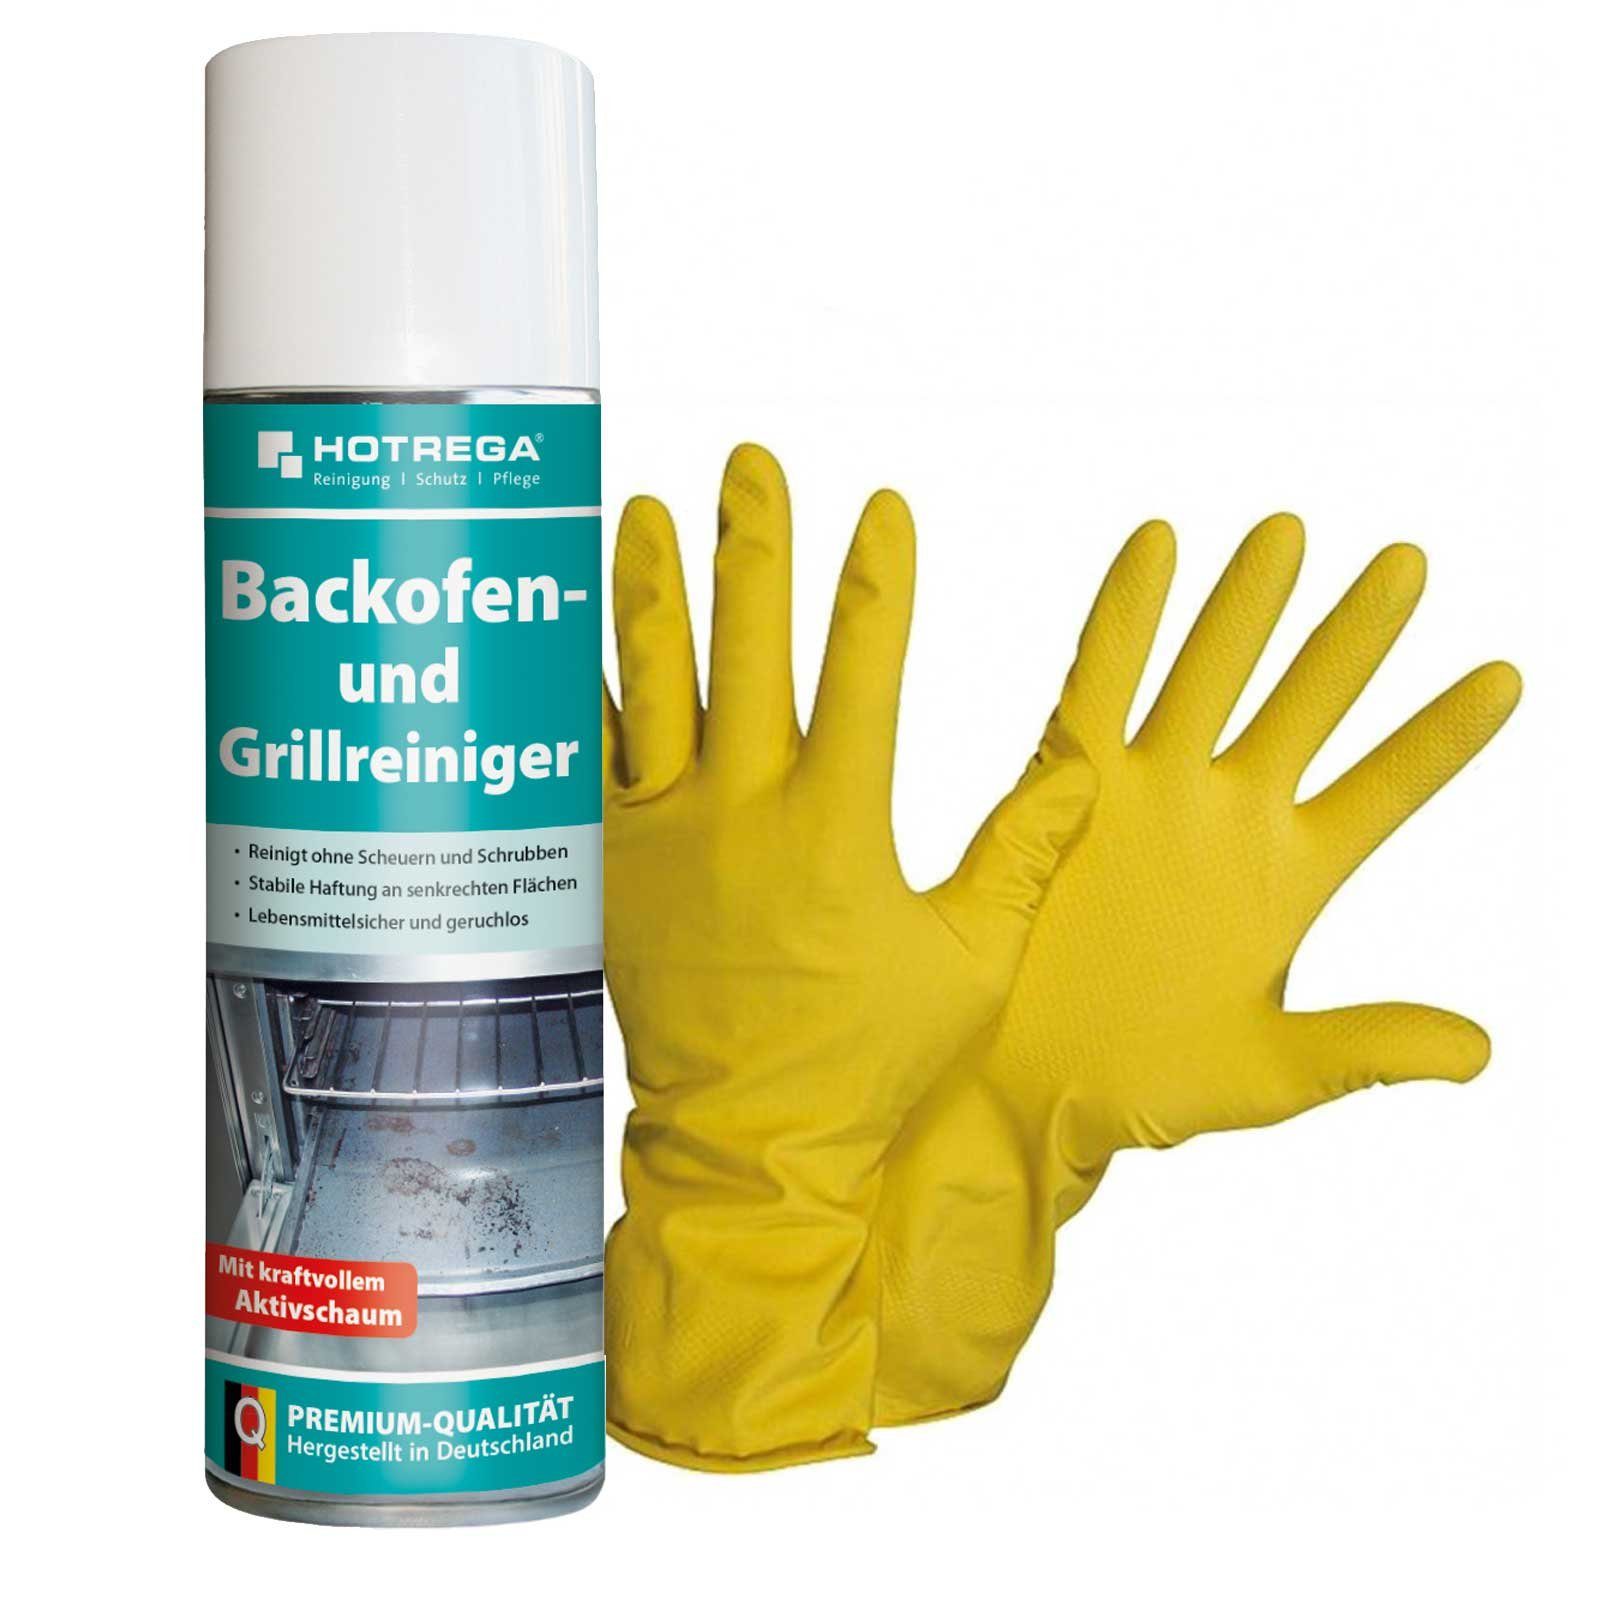 NITRAS + 10 Gr. SET Handschuhe 300 ml HOTREGA® und Grillreiniger Backofen Backofenreiniger